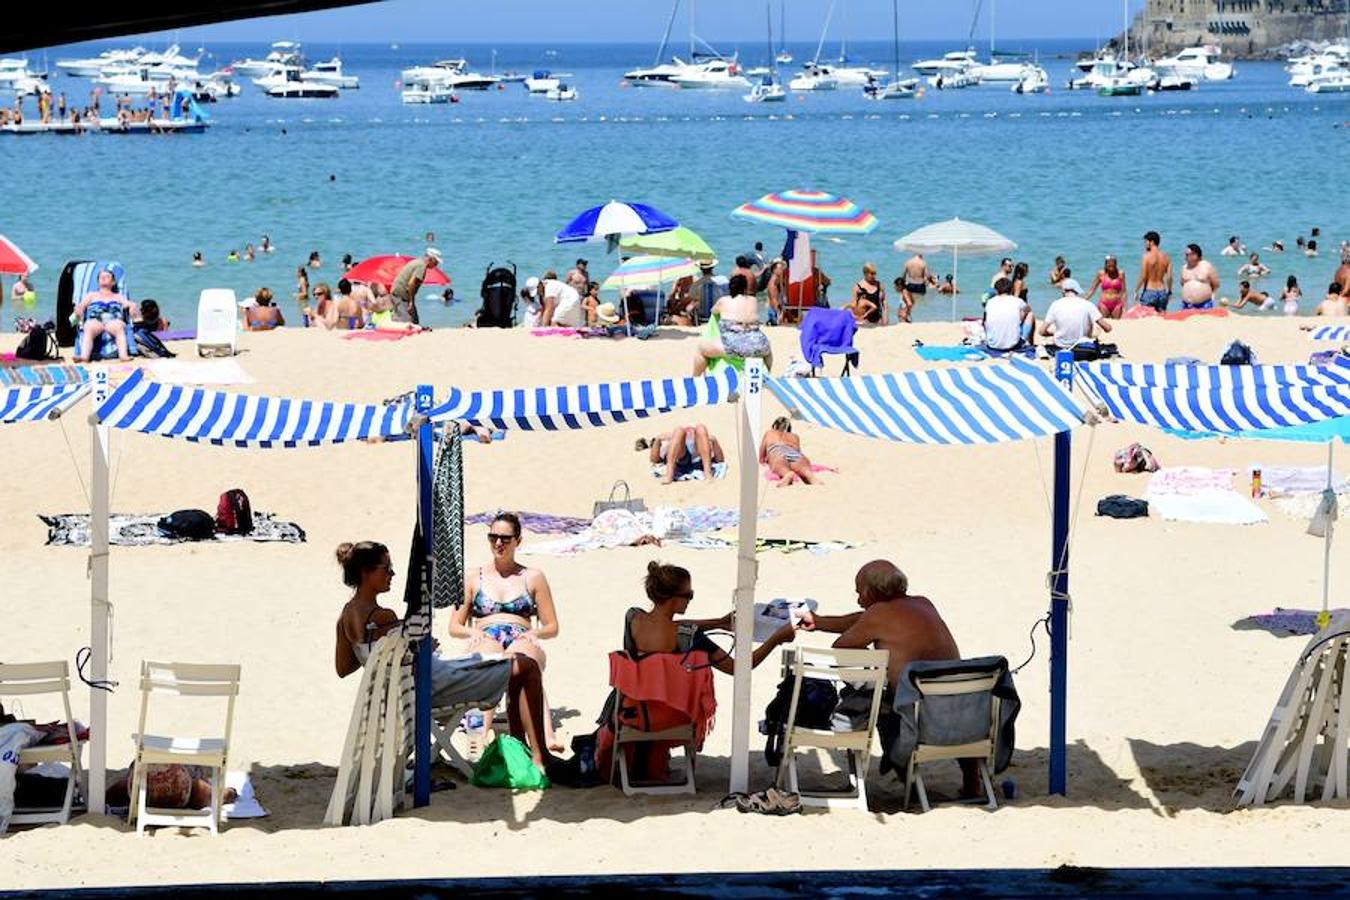 El calor sigue presentes en Gipuzkoa y en el resto del País Vasco. El sofoco no cesa y las playas donostiarras se han abarrotado este lunes debido a las altas temperaturas.